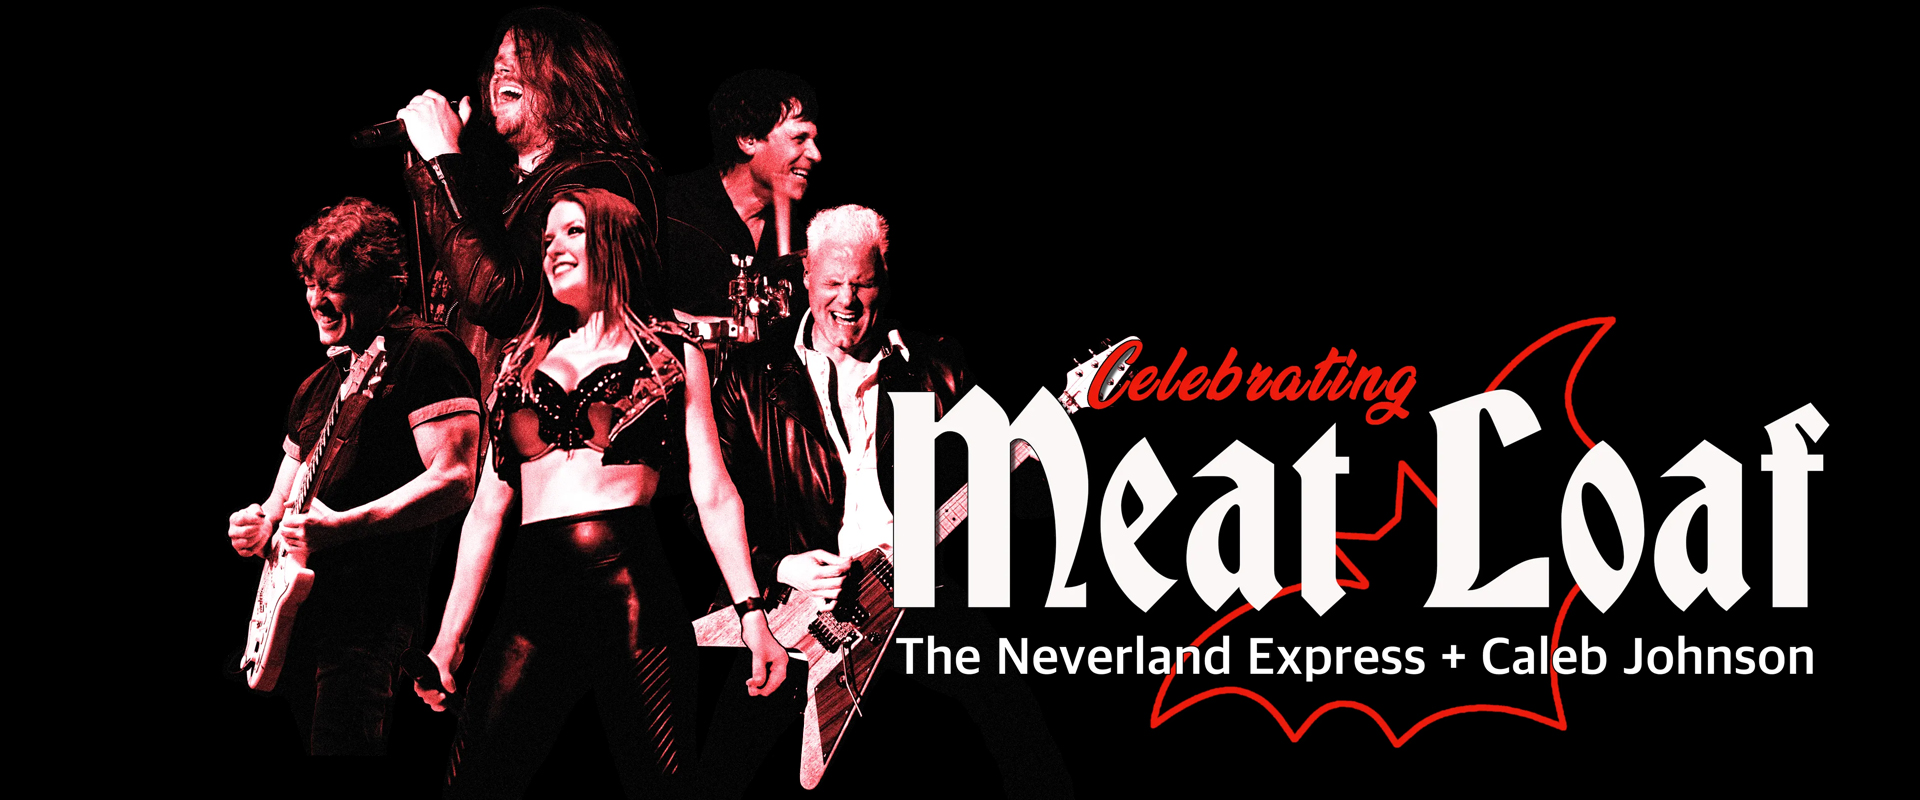 Celebrating Meatloaf image